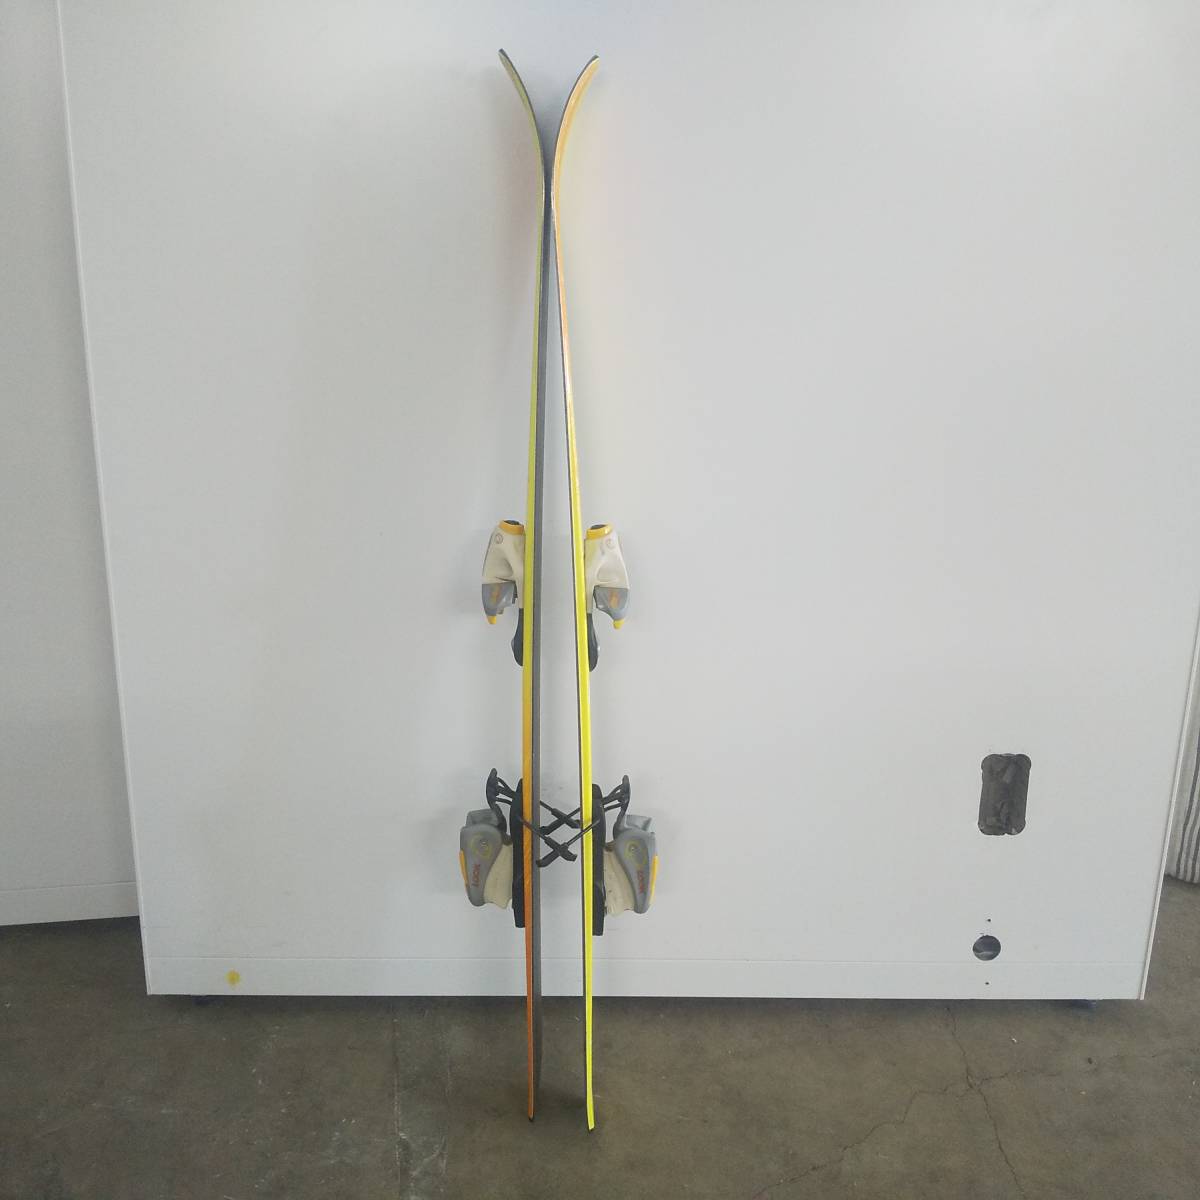 ◆KAZAMA SPAX 110cm カザマ ジュニア用スキー ビンディング付き スキー板 現状品◆K1025_画像6